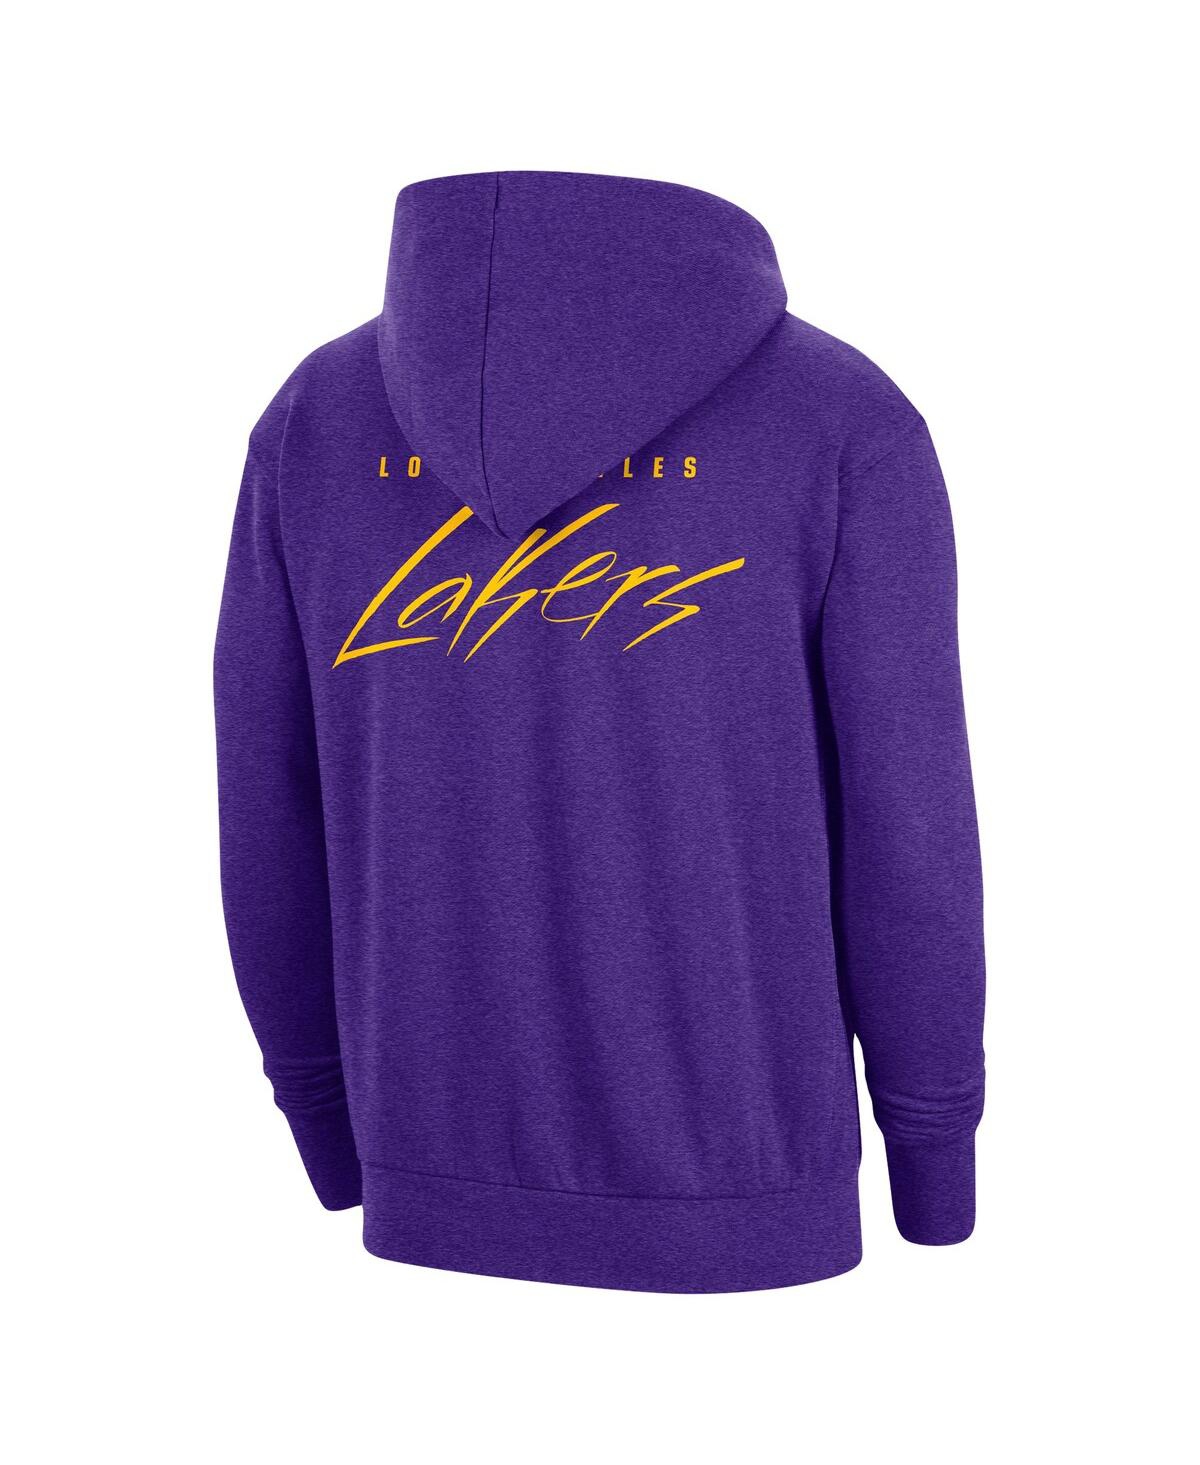 Shop Nike Men's  Heather Purple Los Angeles Lakers Courtside Versus Flight Pullover Hoodie